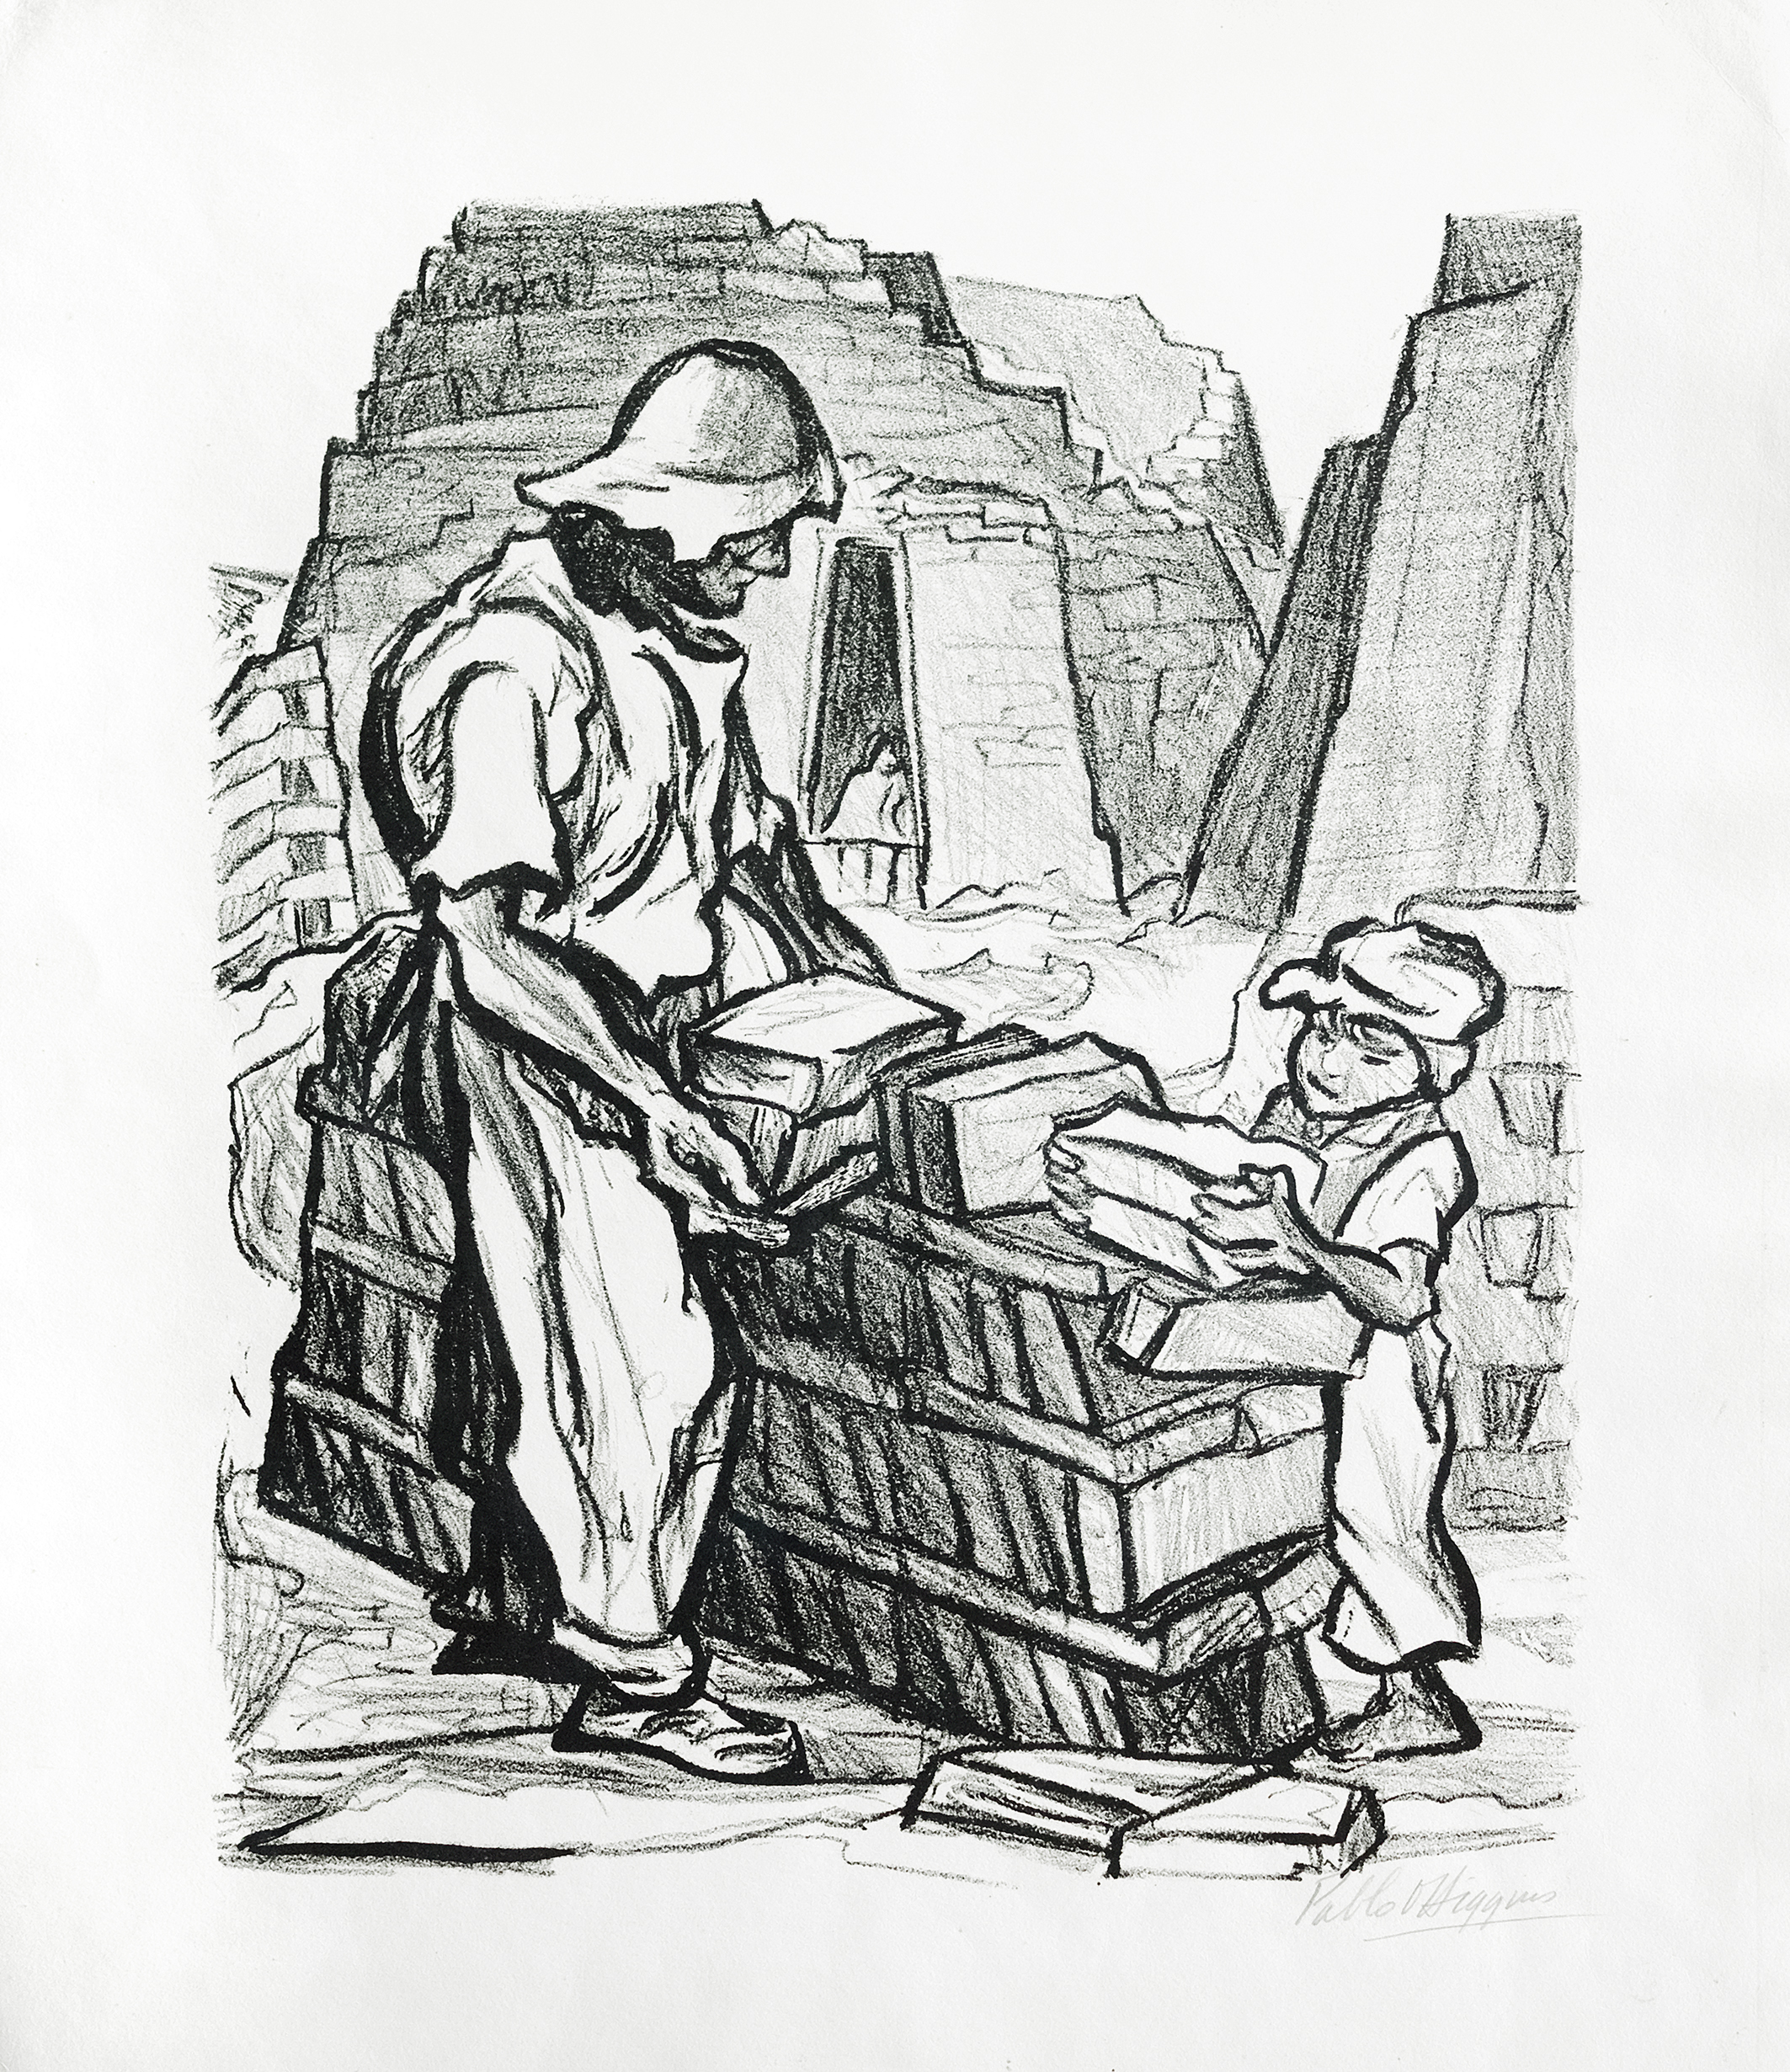 Estampa que representa a un hombre adulto y a un niño trabajando en una ladrillera. Los personajes apilan ladrillos en el primer plano y al fondo se aprecian los hornos.